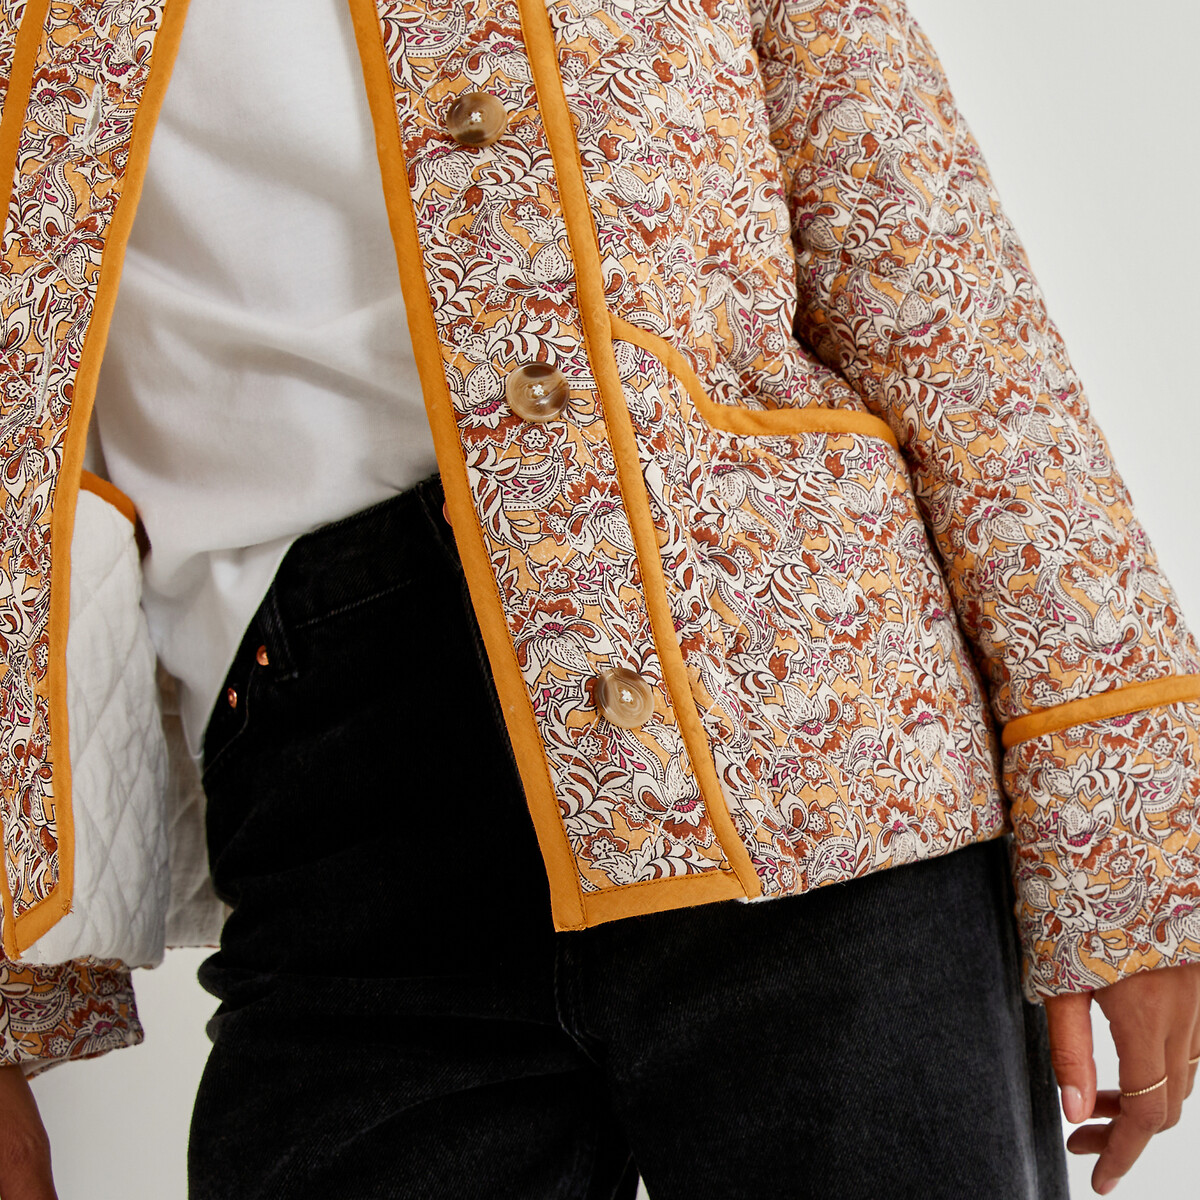 Куртка стеганая легкая с цветочным принтом двухсторонняя  36 (FR) - 42 (RUS) разноцветный LaRedoute, размер 36 (FR) - 42 (RUS) Куртка стеганая легкая с цветочным принтом двухсторонняя  36 (FR) - 42 (RUS) разноцветный - фото 3